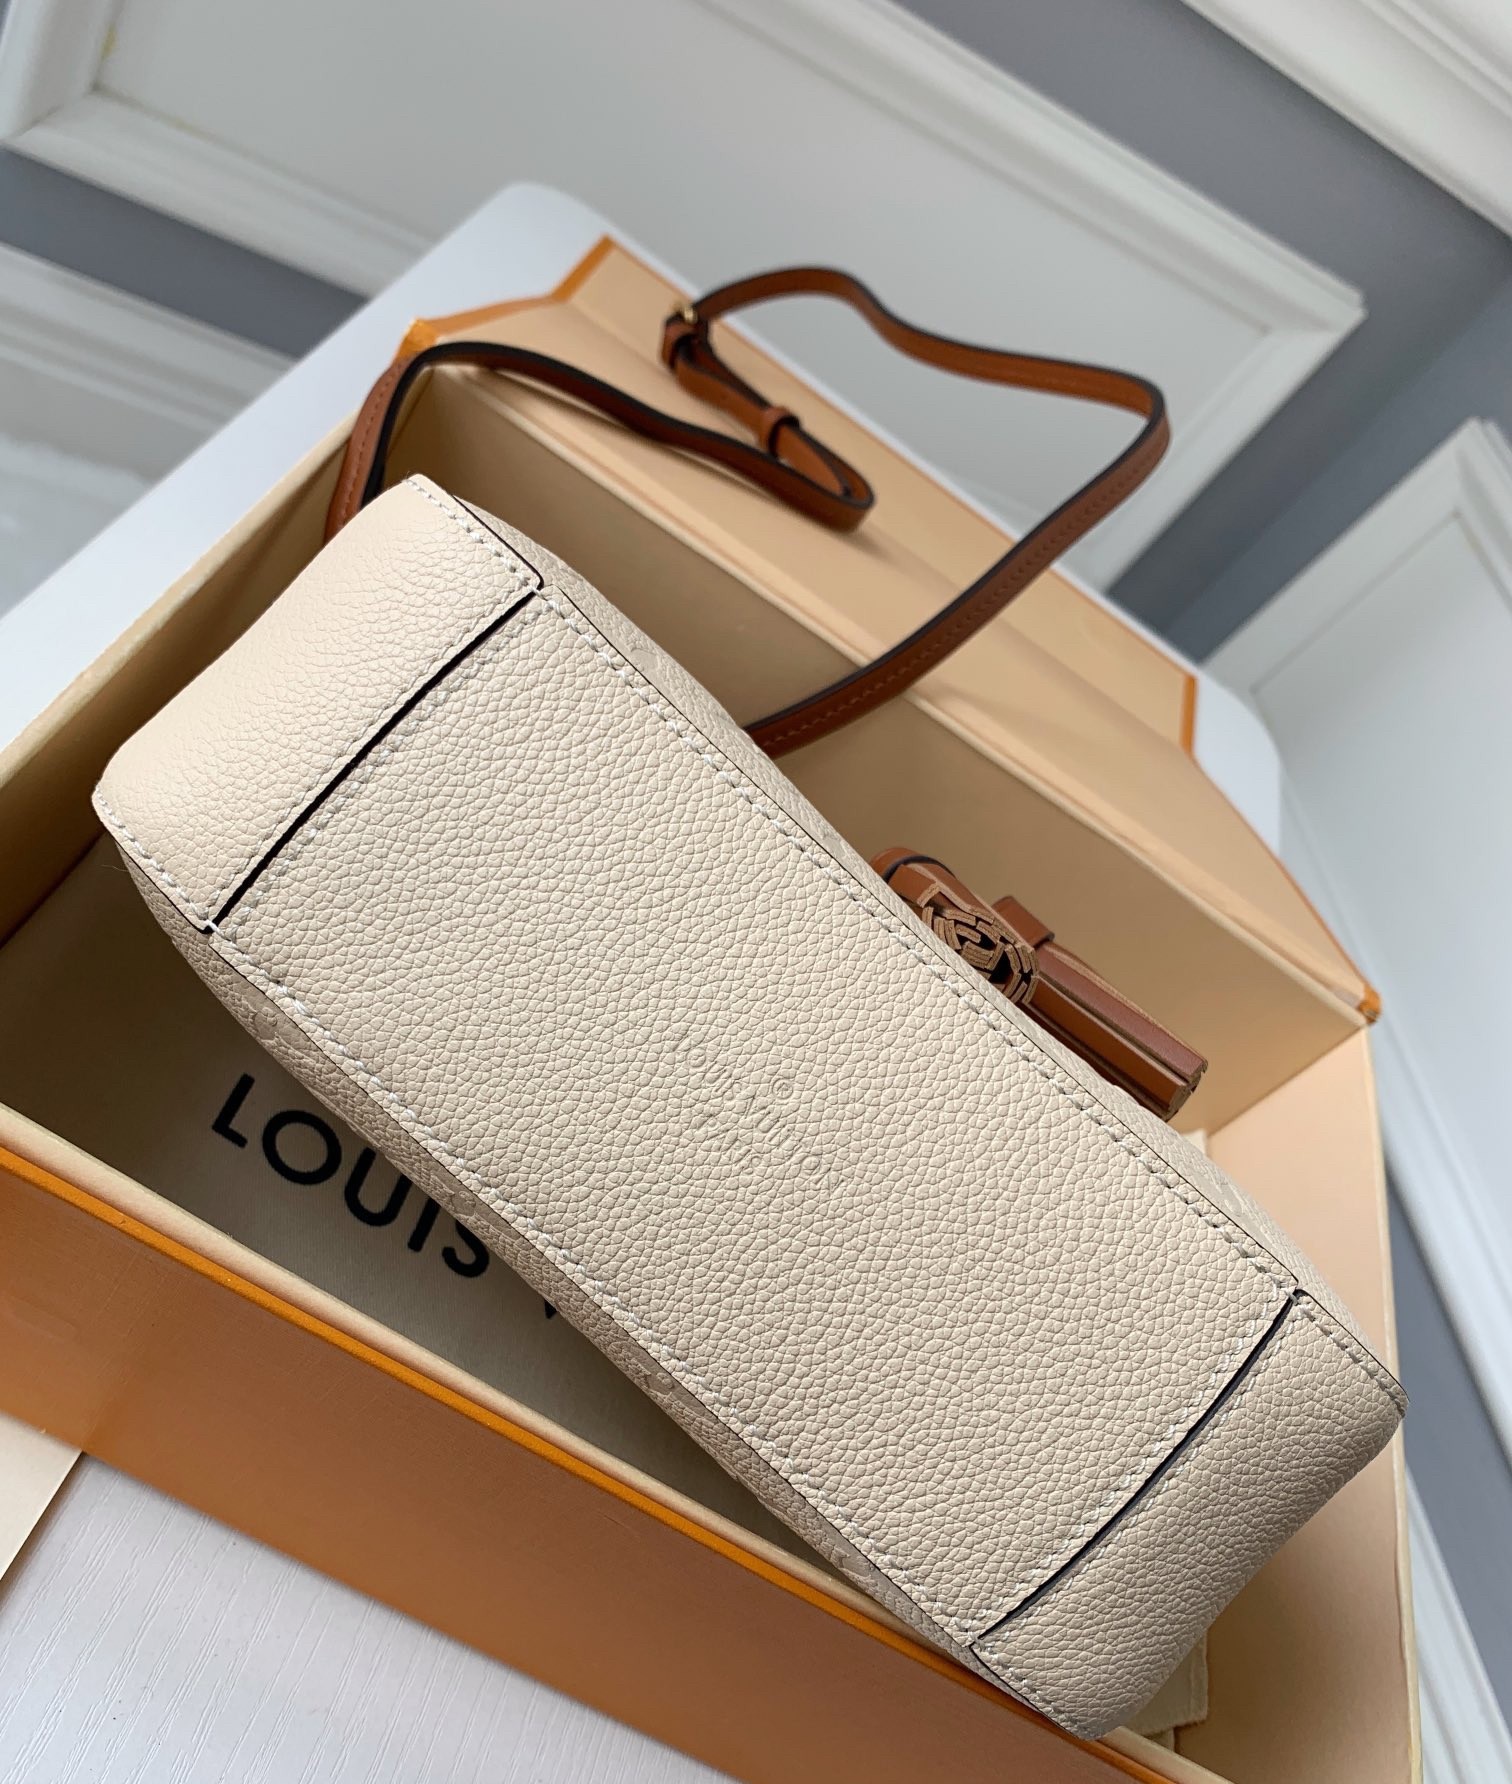 Replica Louis Vuitton Saintonge Bag In Monogram Empreinte Leather M44597